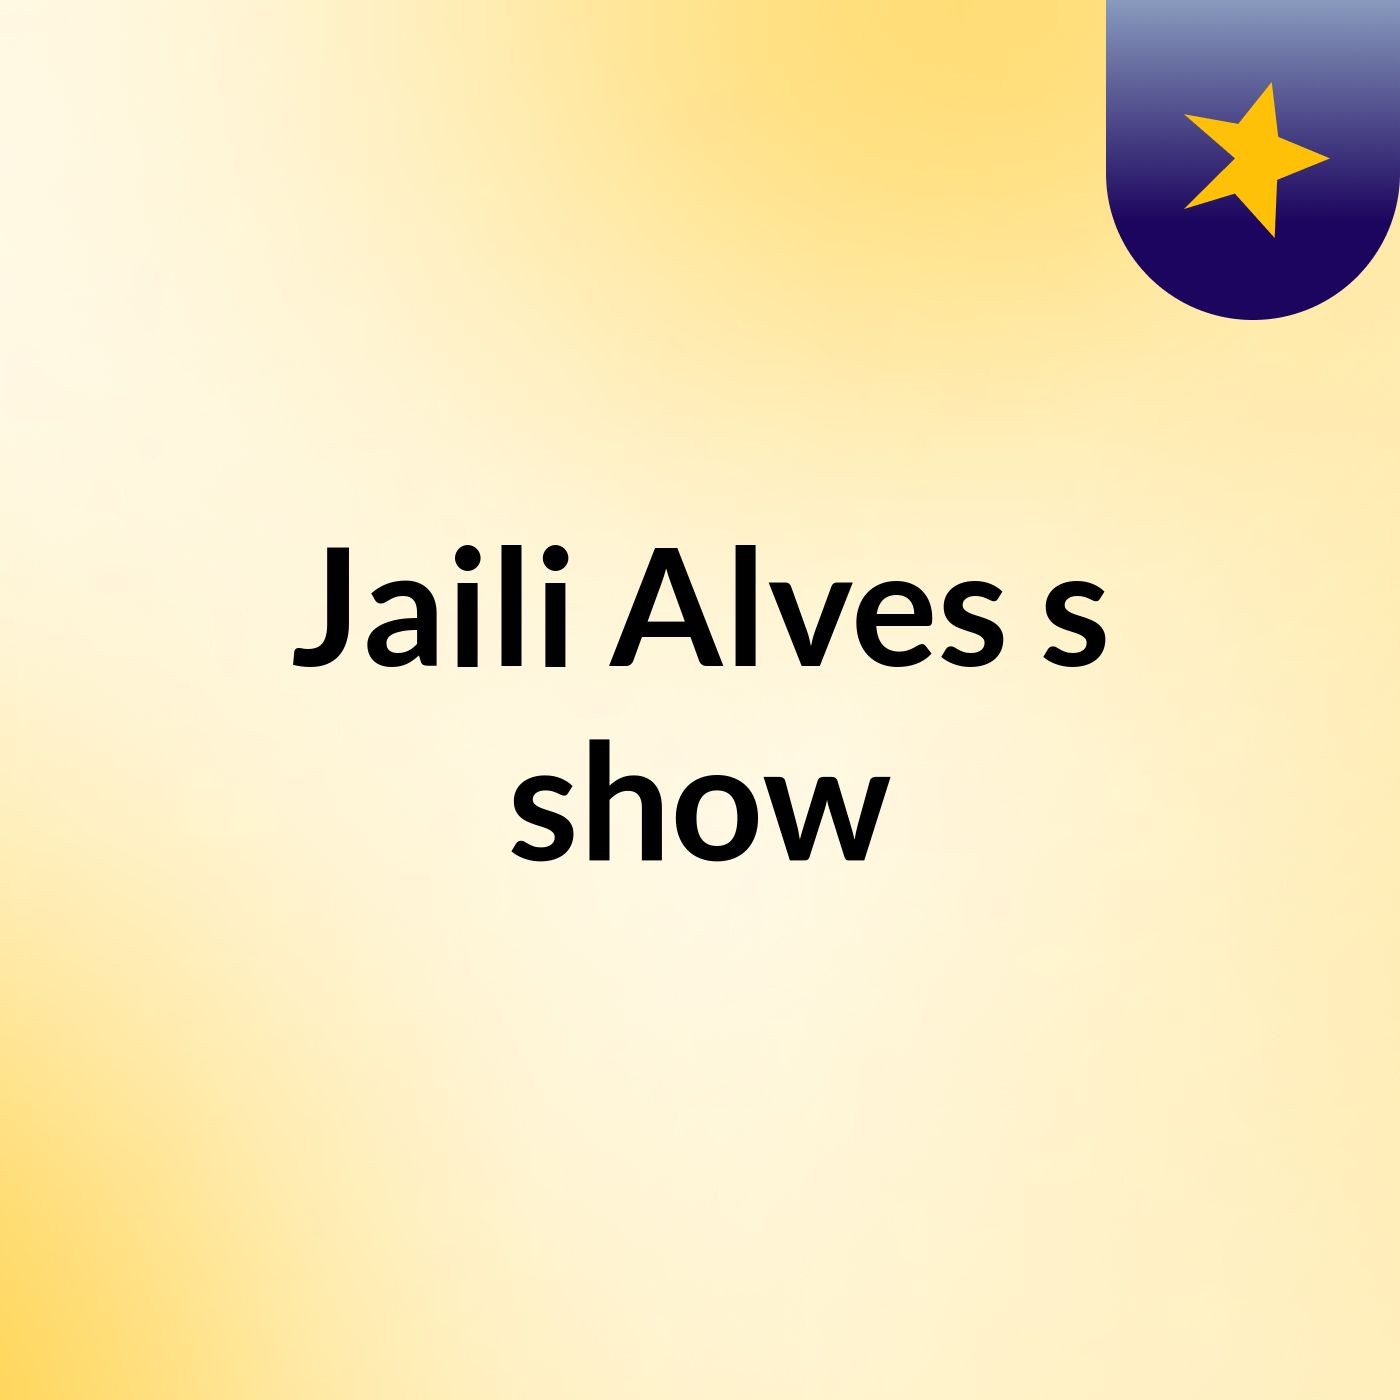 Jaili Alves's show